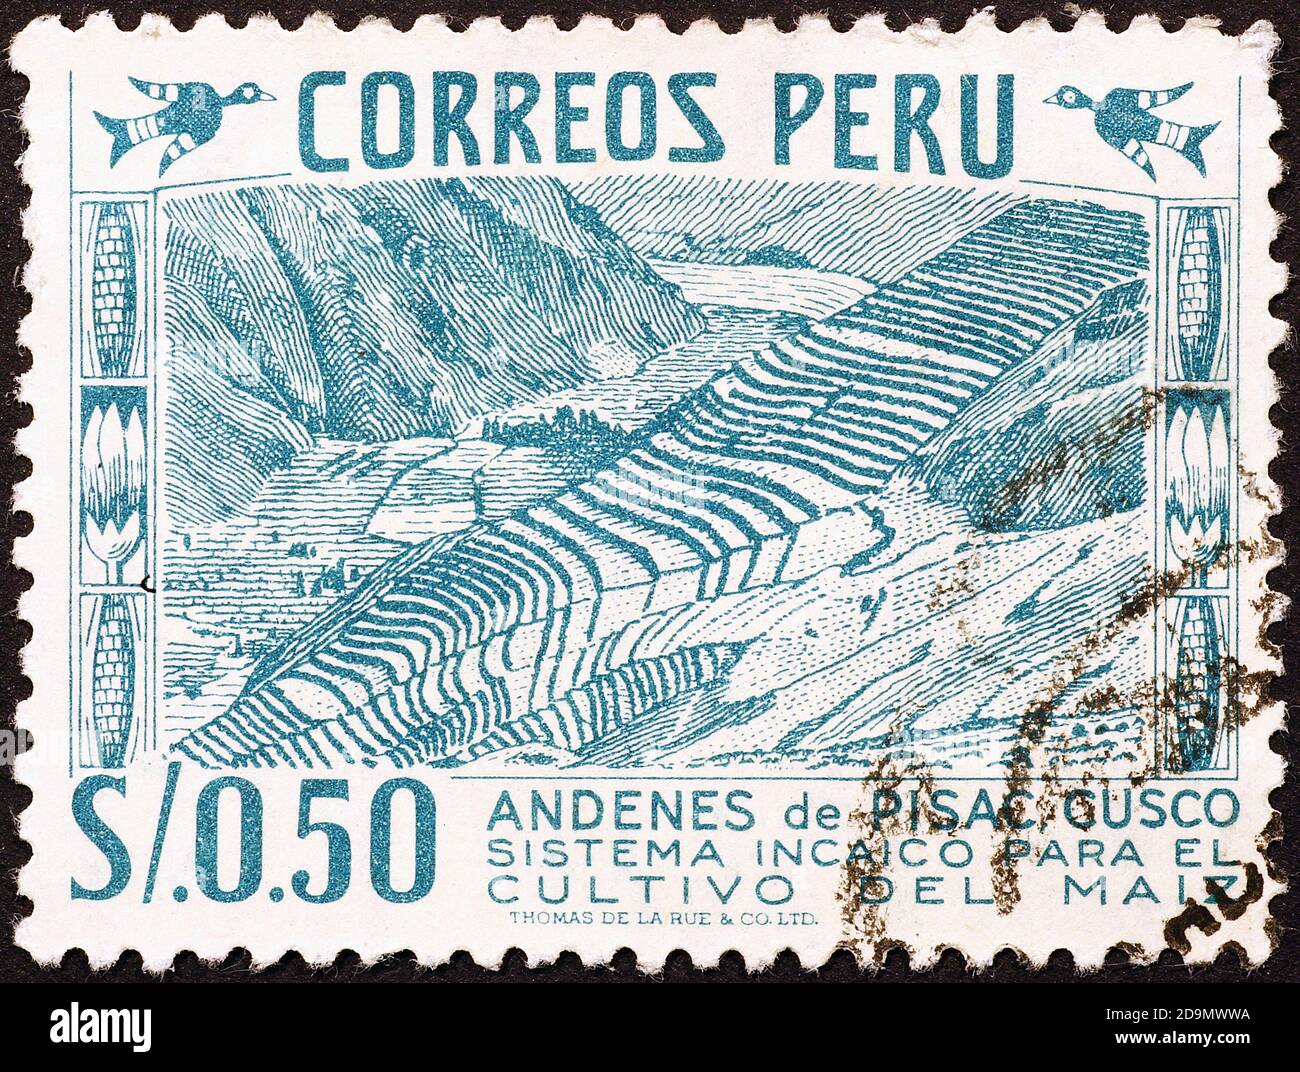 Antichi raccolti terrazzati peruviani su francobollo d'epoca Foto Stock